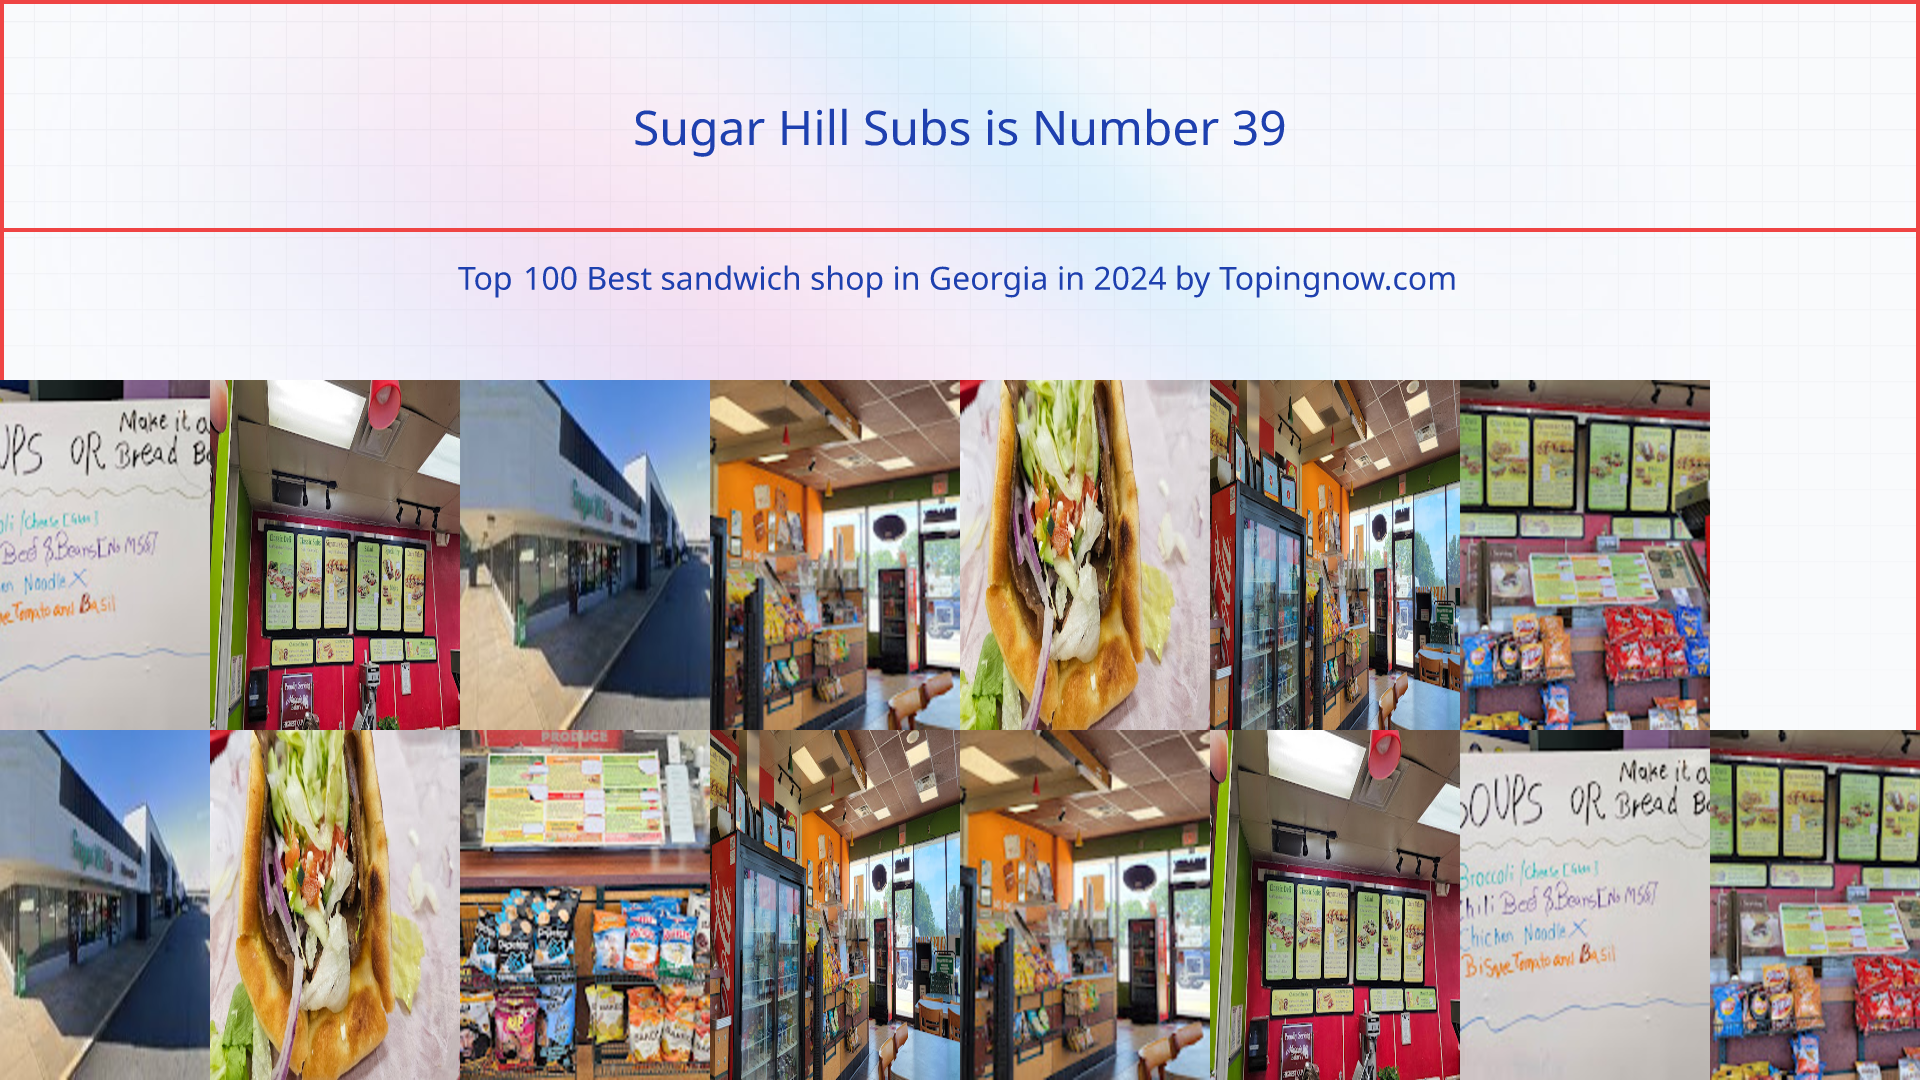 Sugar Hill Subs: Top 100 Best sandwich shop in Georgia in 2024